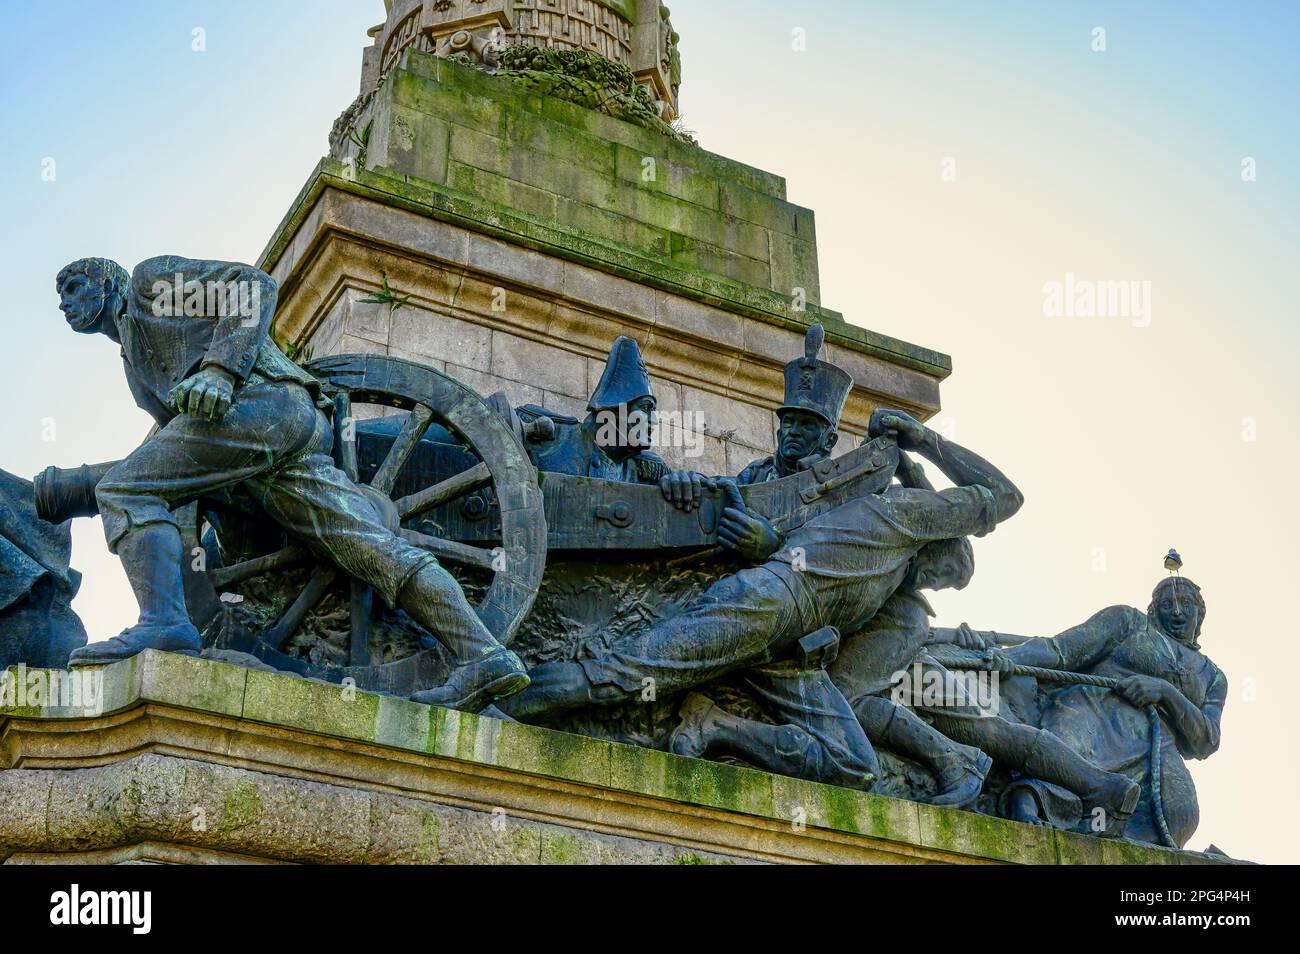 Monument aux héros de la guerre péninsulaire à Lisbonne, Portugal Banque D'Images